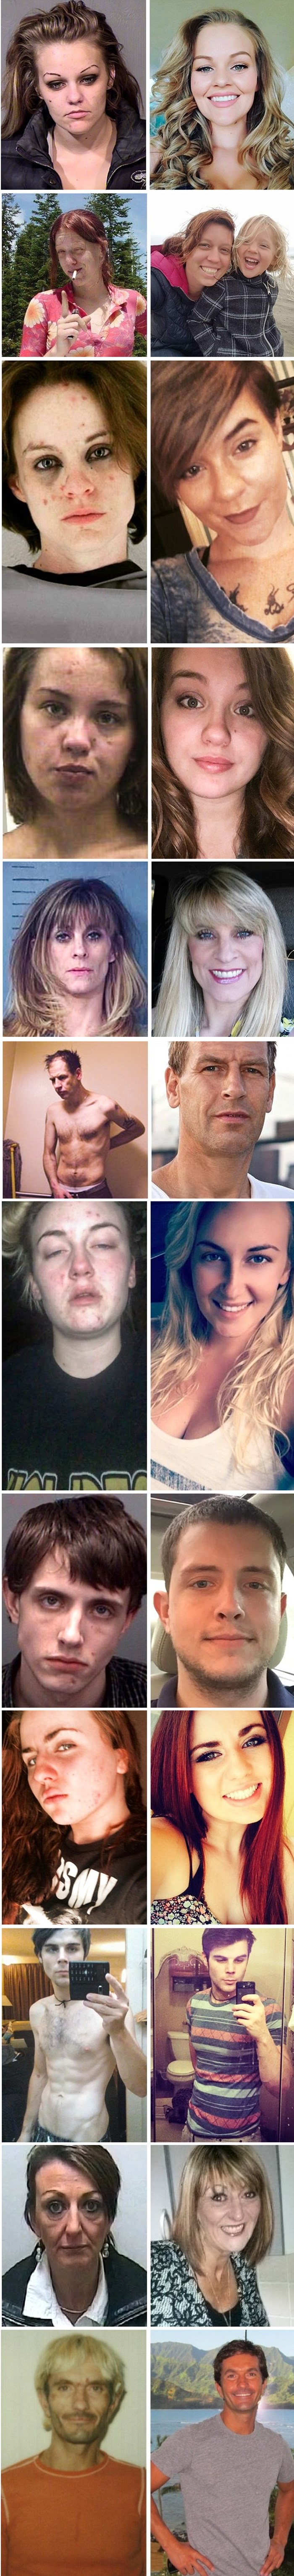 Čudesne transformacije - Pogledajte kako ovi ljudi izgledaju nakon što su prestali konzumirati drogu